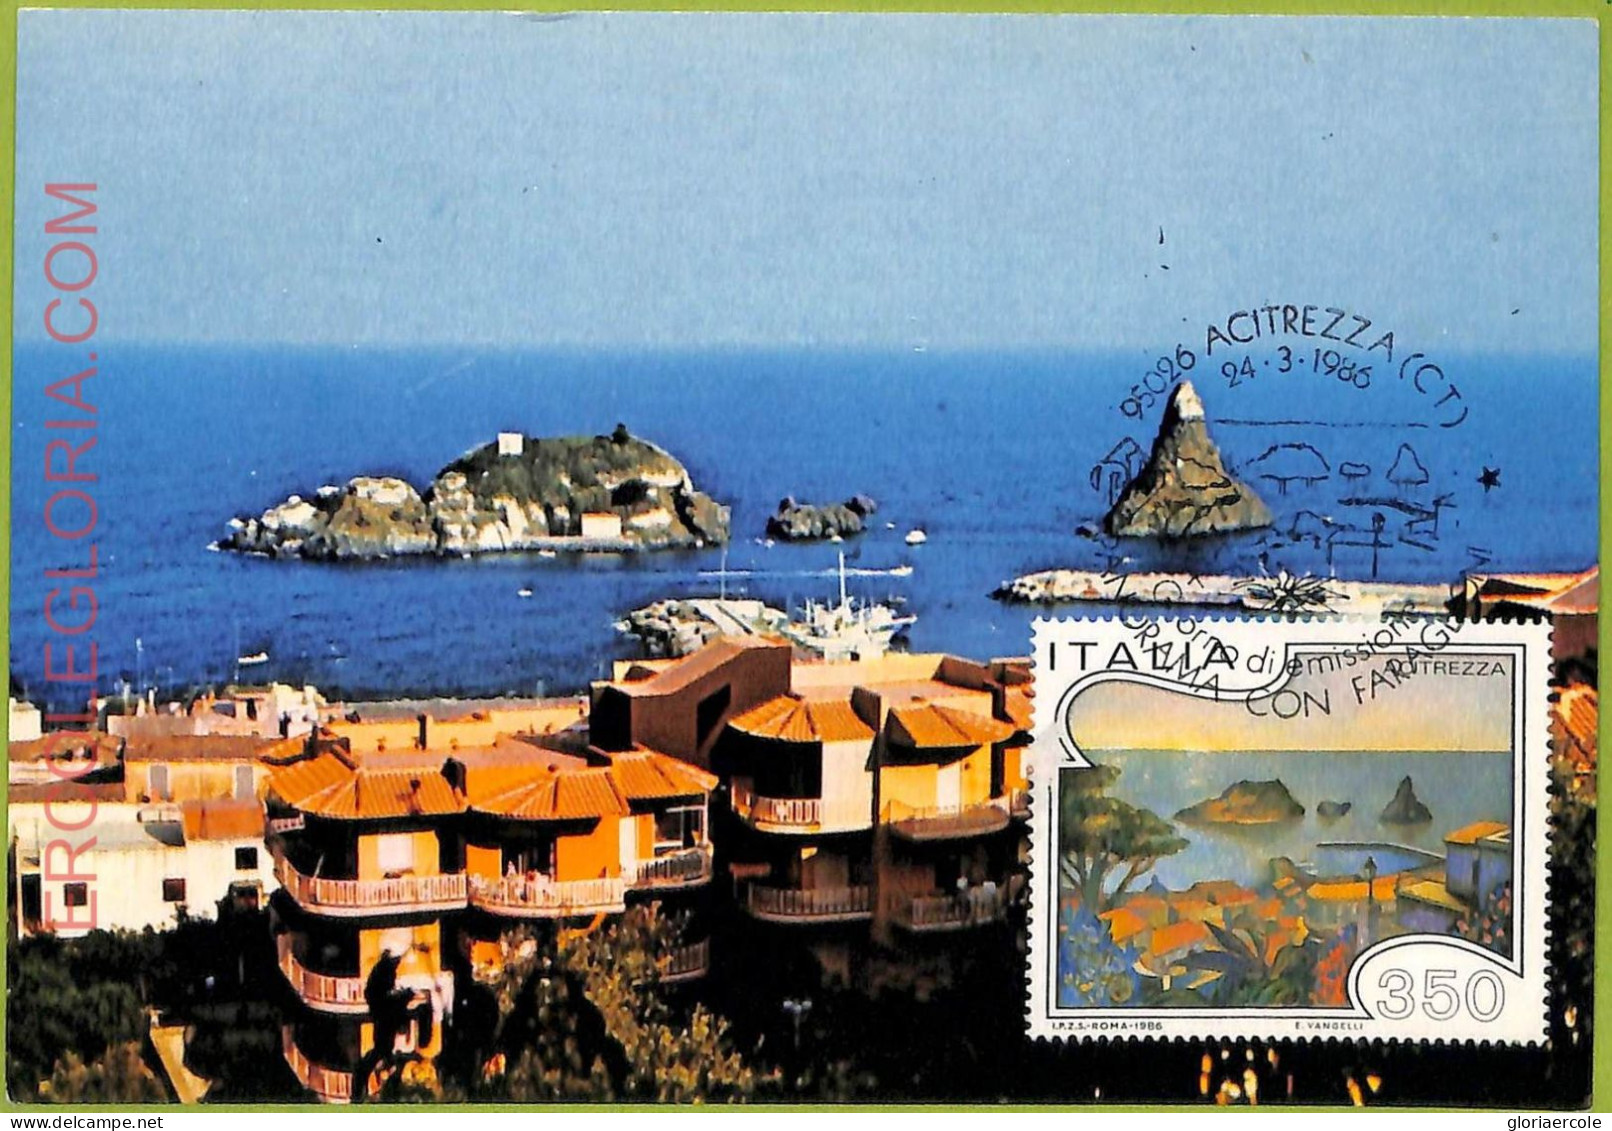 Ad3370 - ITALY - Postal History - MAXIMUM CARD - 1986 - Nature - Maximumkaarten